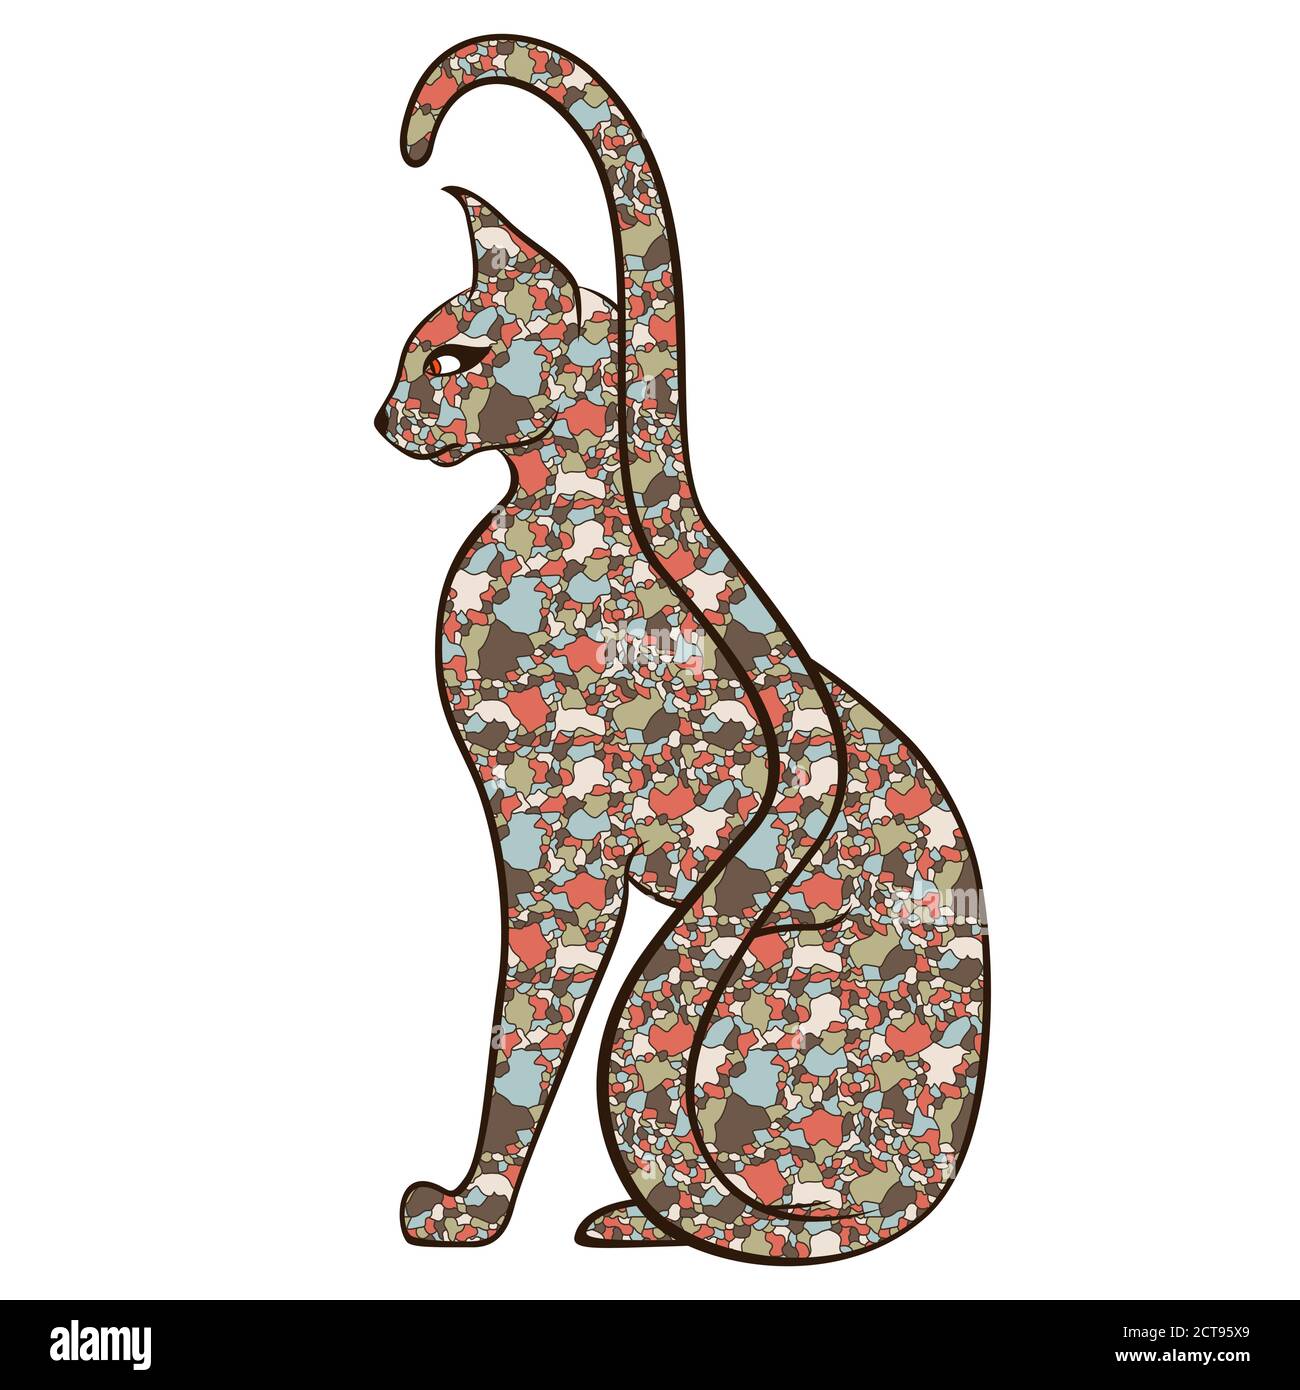 Ernst und anmutig Katze mit langen Schwanz mit Körper aus bunten gedämpften Mosaikformen isoliert auf weißem Hintergrund, Vektor-Illustration Stock Vektor